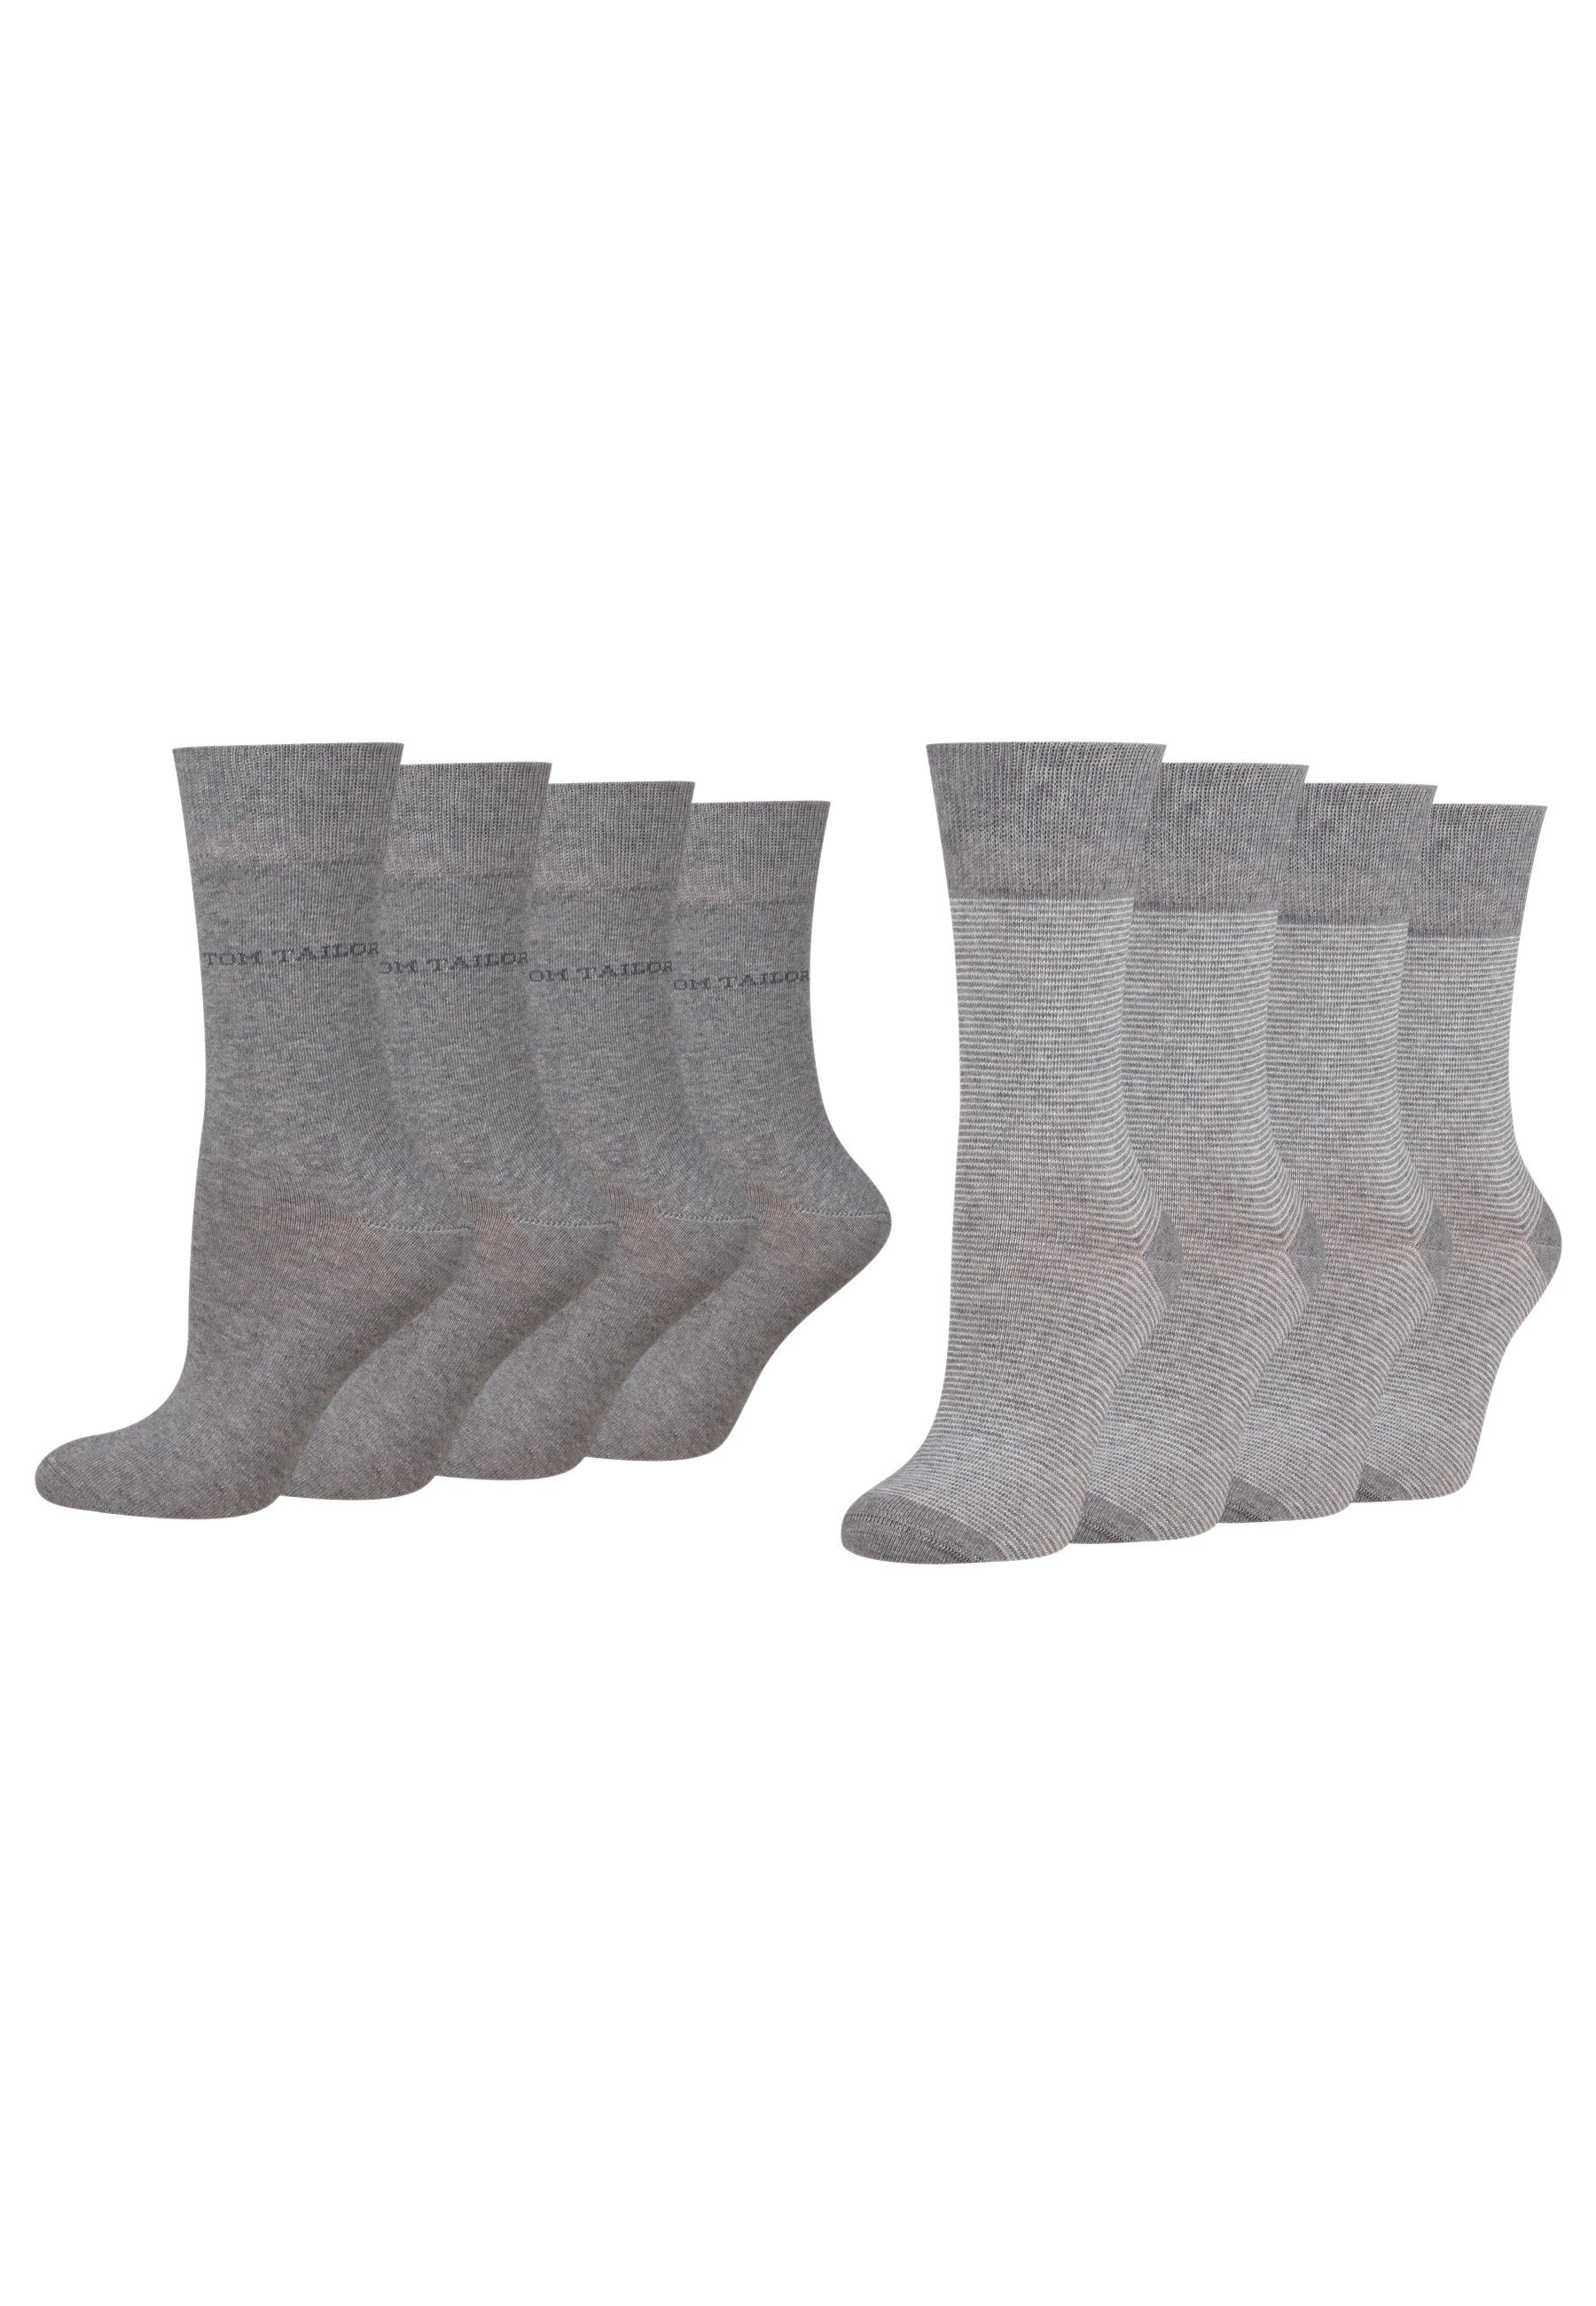 TOM TAILOR Socken 9521150042_8 Tom Tailor women socks 2er basic stripe 8 Paar grey